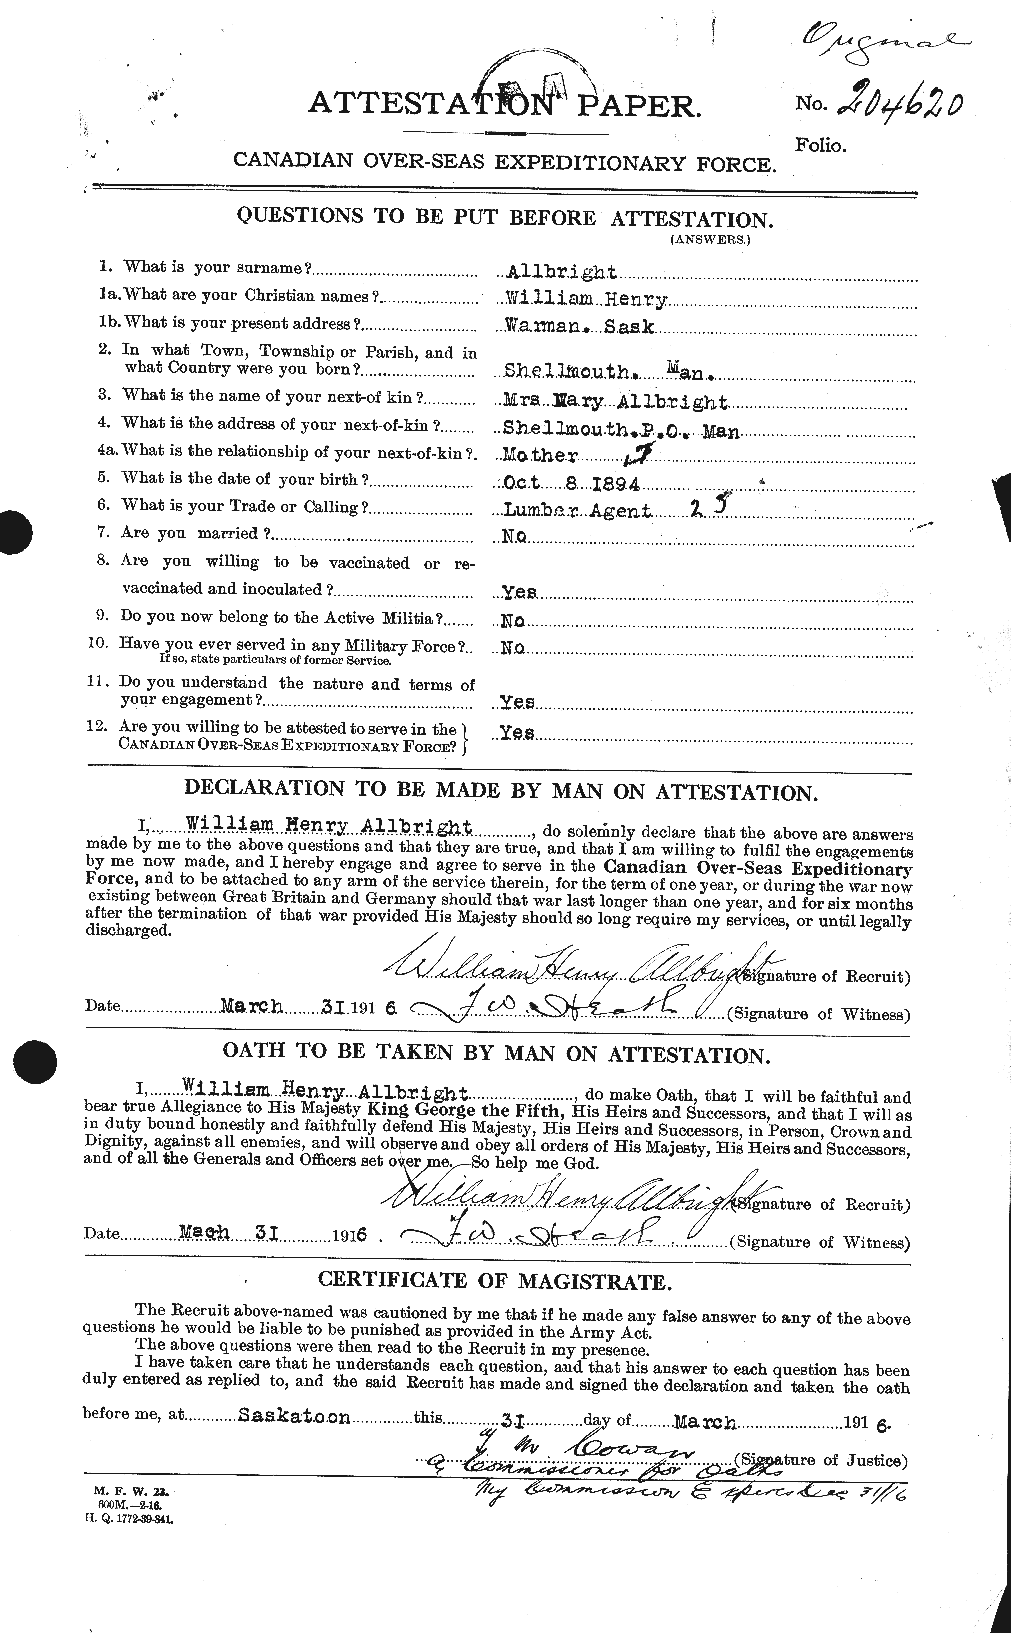 Dossiers du Personnel de la Première Guerre mondiale - CEC 205676a